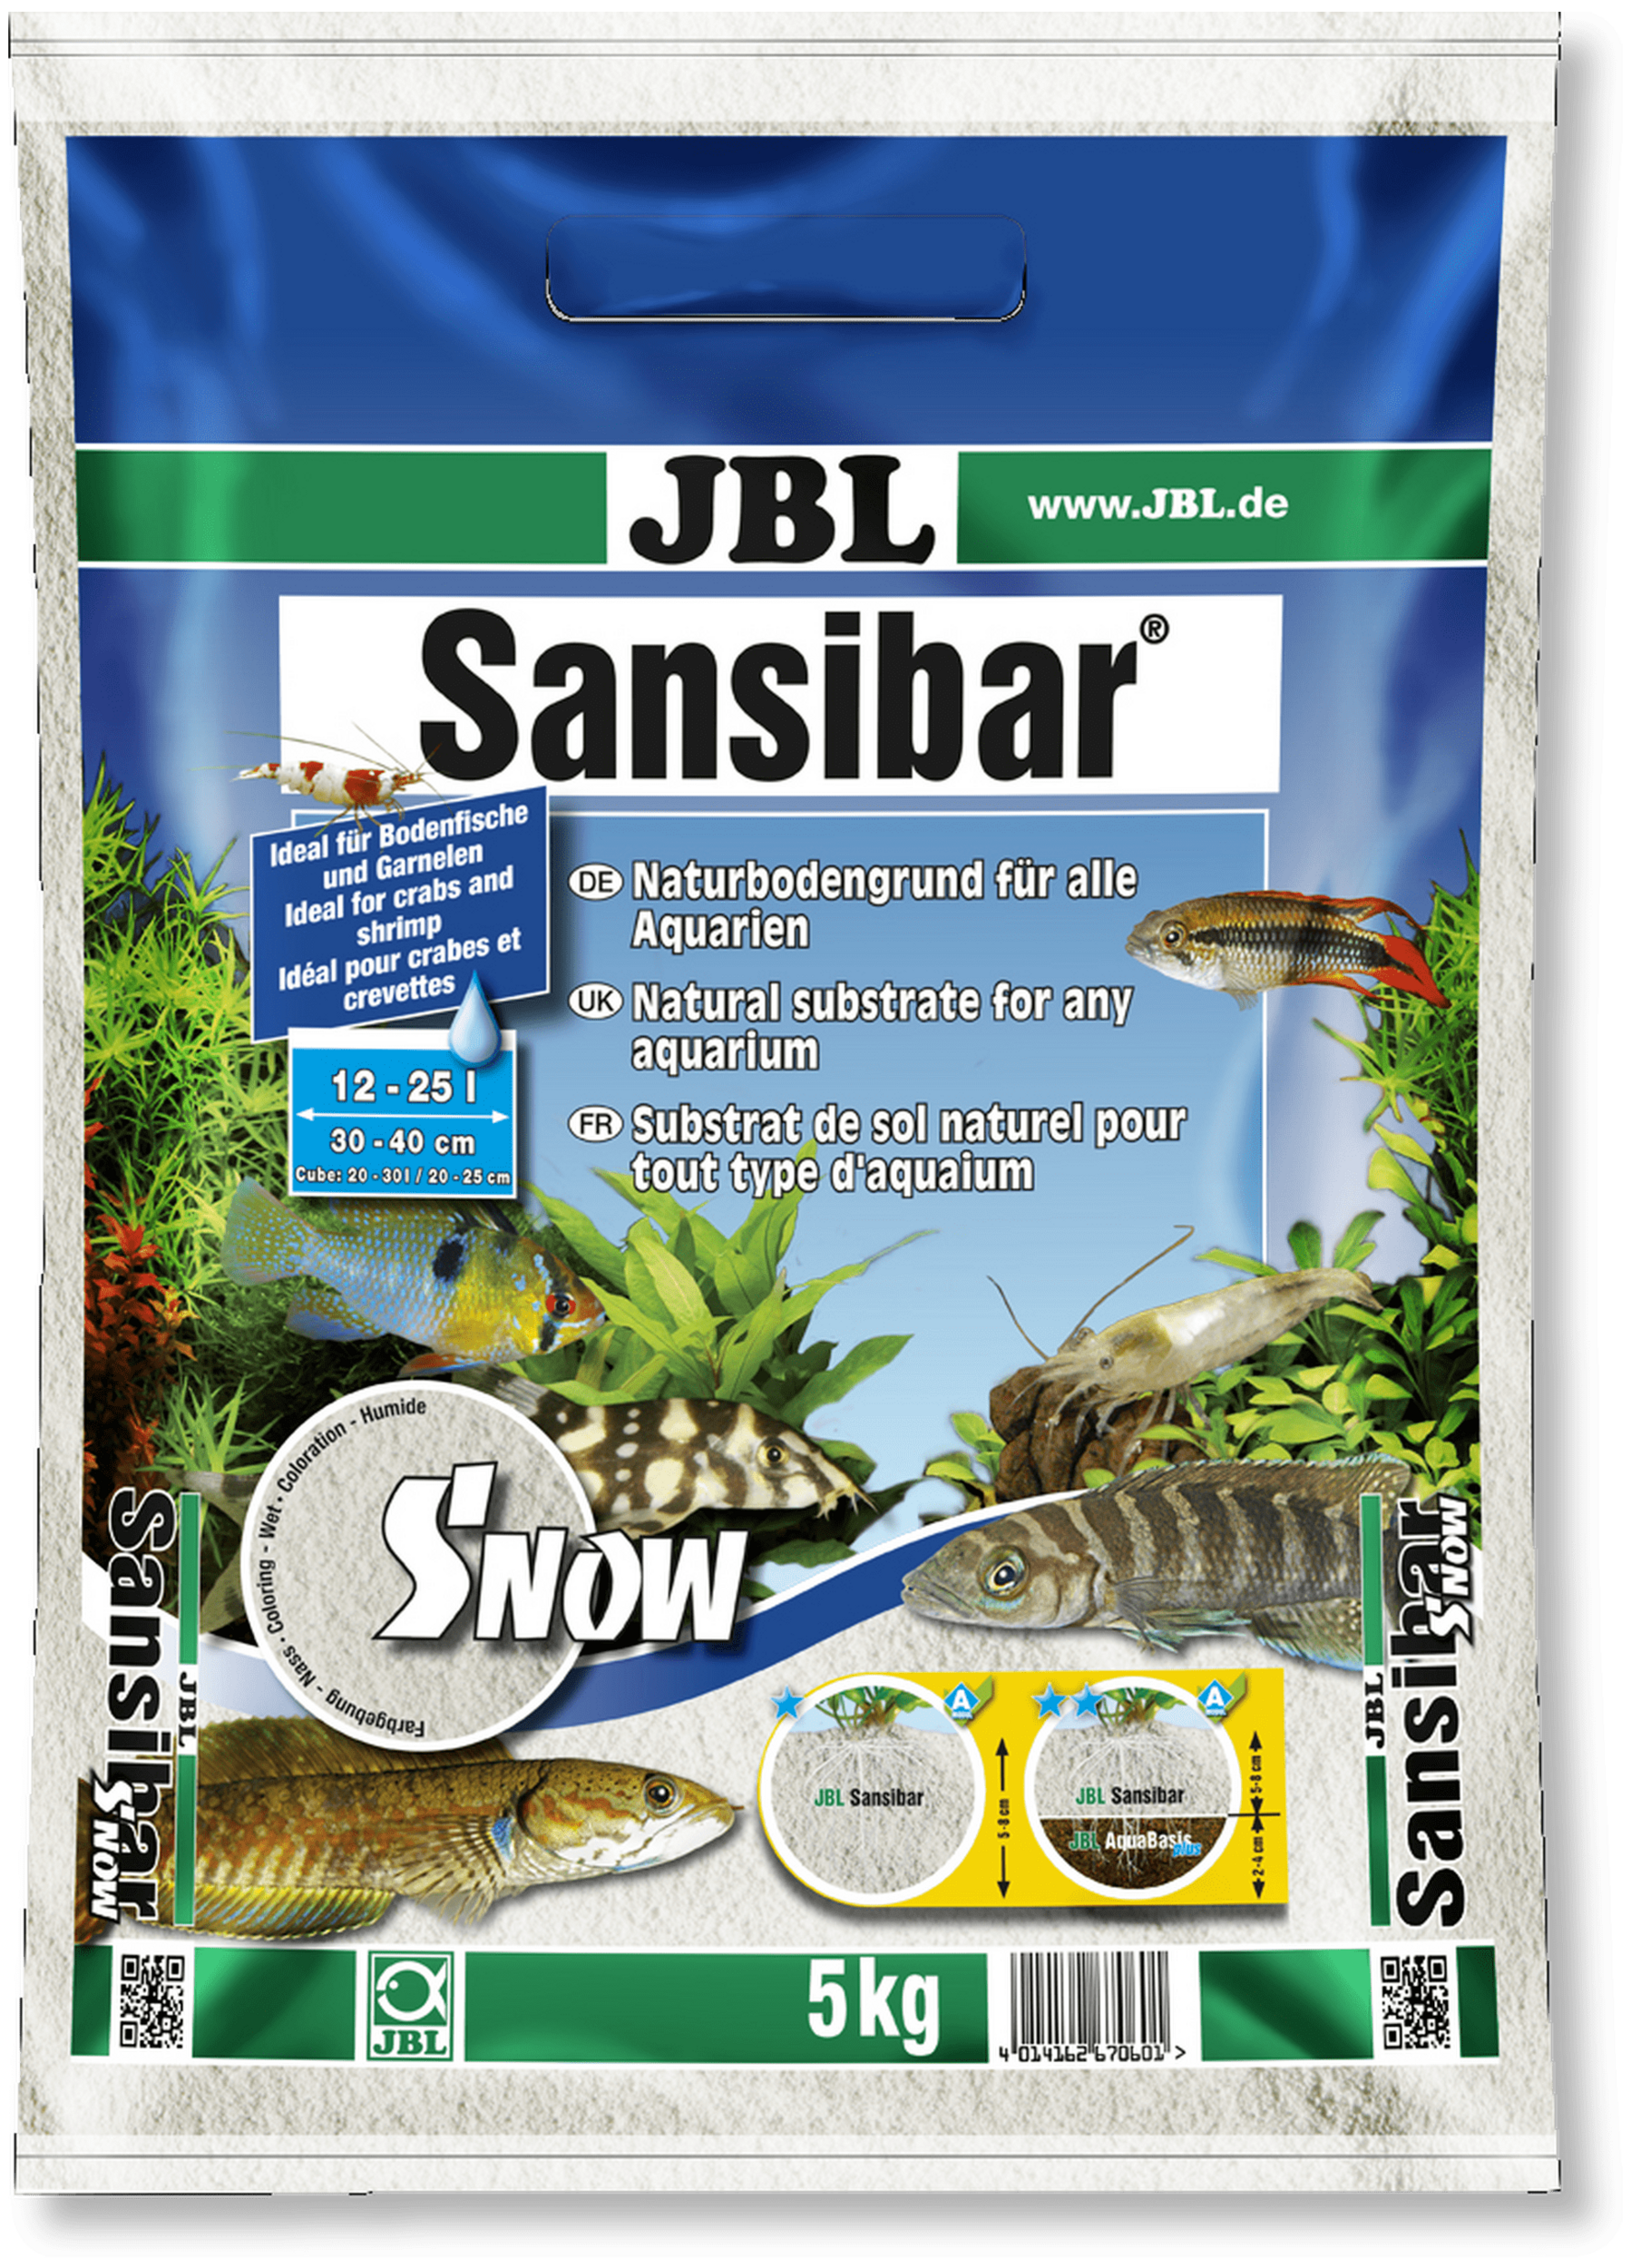 JBL Sansibar Snow 5 Kg substrat de sol naturel fin couleur Blanc Neige 0,1 à 0,6 mm pour aquarium d\'eau douce